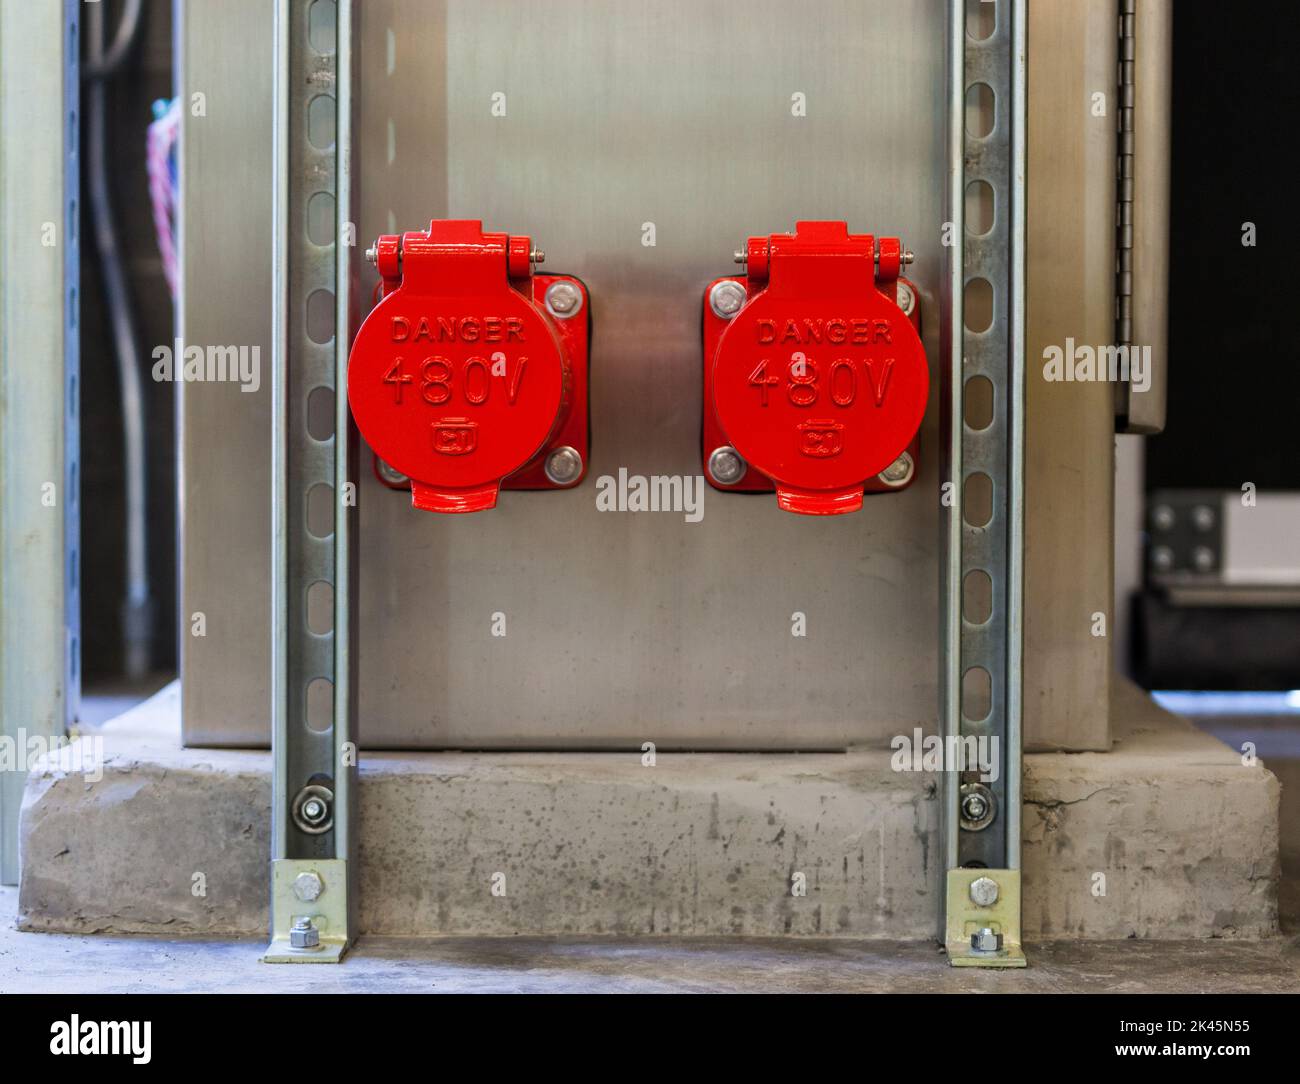 Dos cubiertas de plástico rojo brillante, tapas que cubren puntos de energía eléctrica en una pared Foto de stock